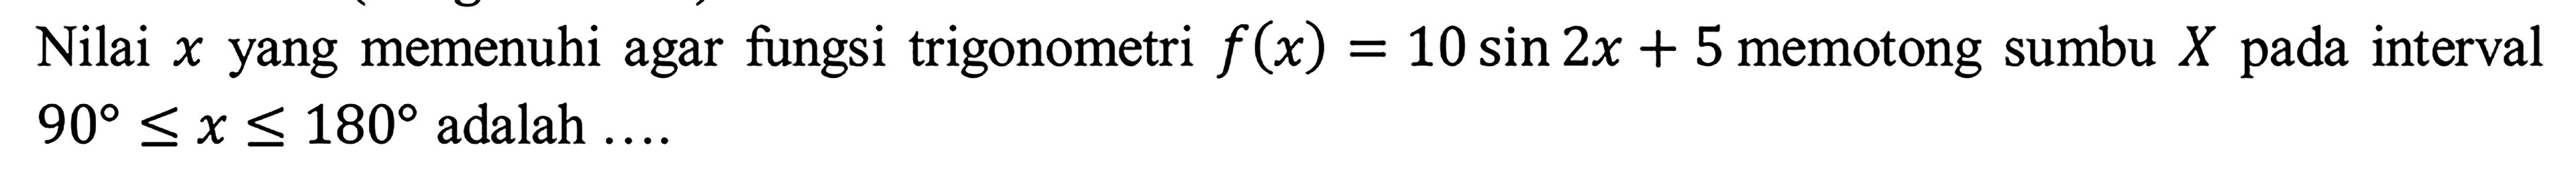 Nilai x yang memenuhi agar fungsi trigonometri f(x)=10 sin 2x + 5 memotong sumbu X pada interval 90<=x<=180 adalah....